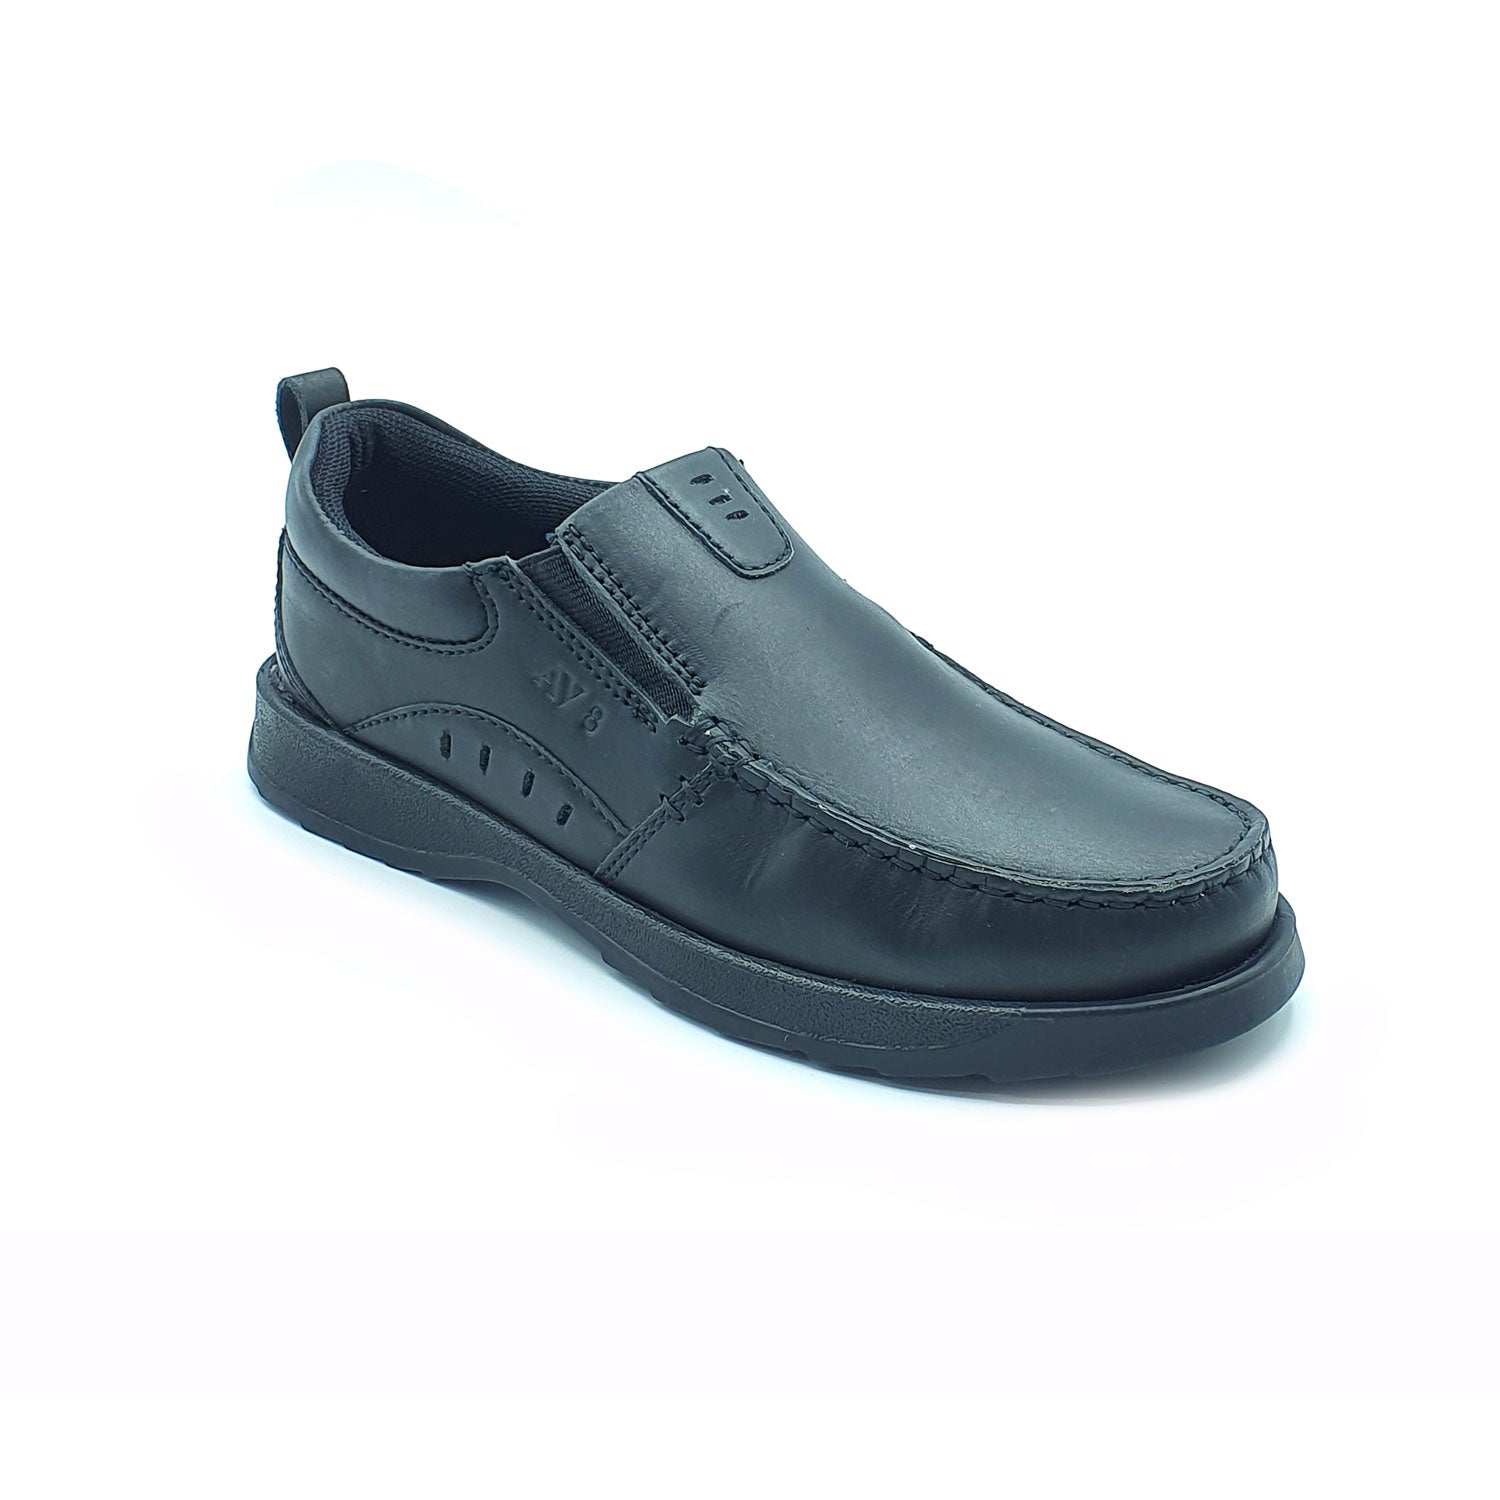 Dubarry Karter Junior Slip On Av8 Shoe - Black 3 Shaws Department Stores